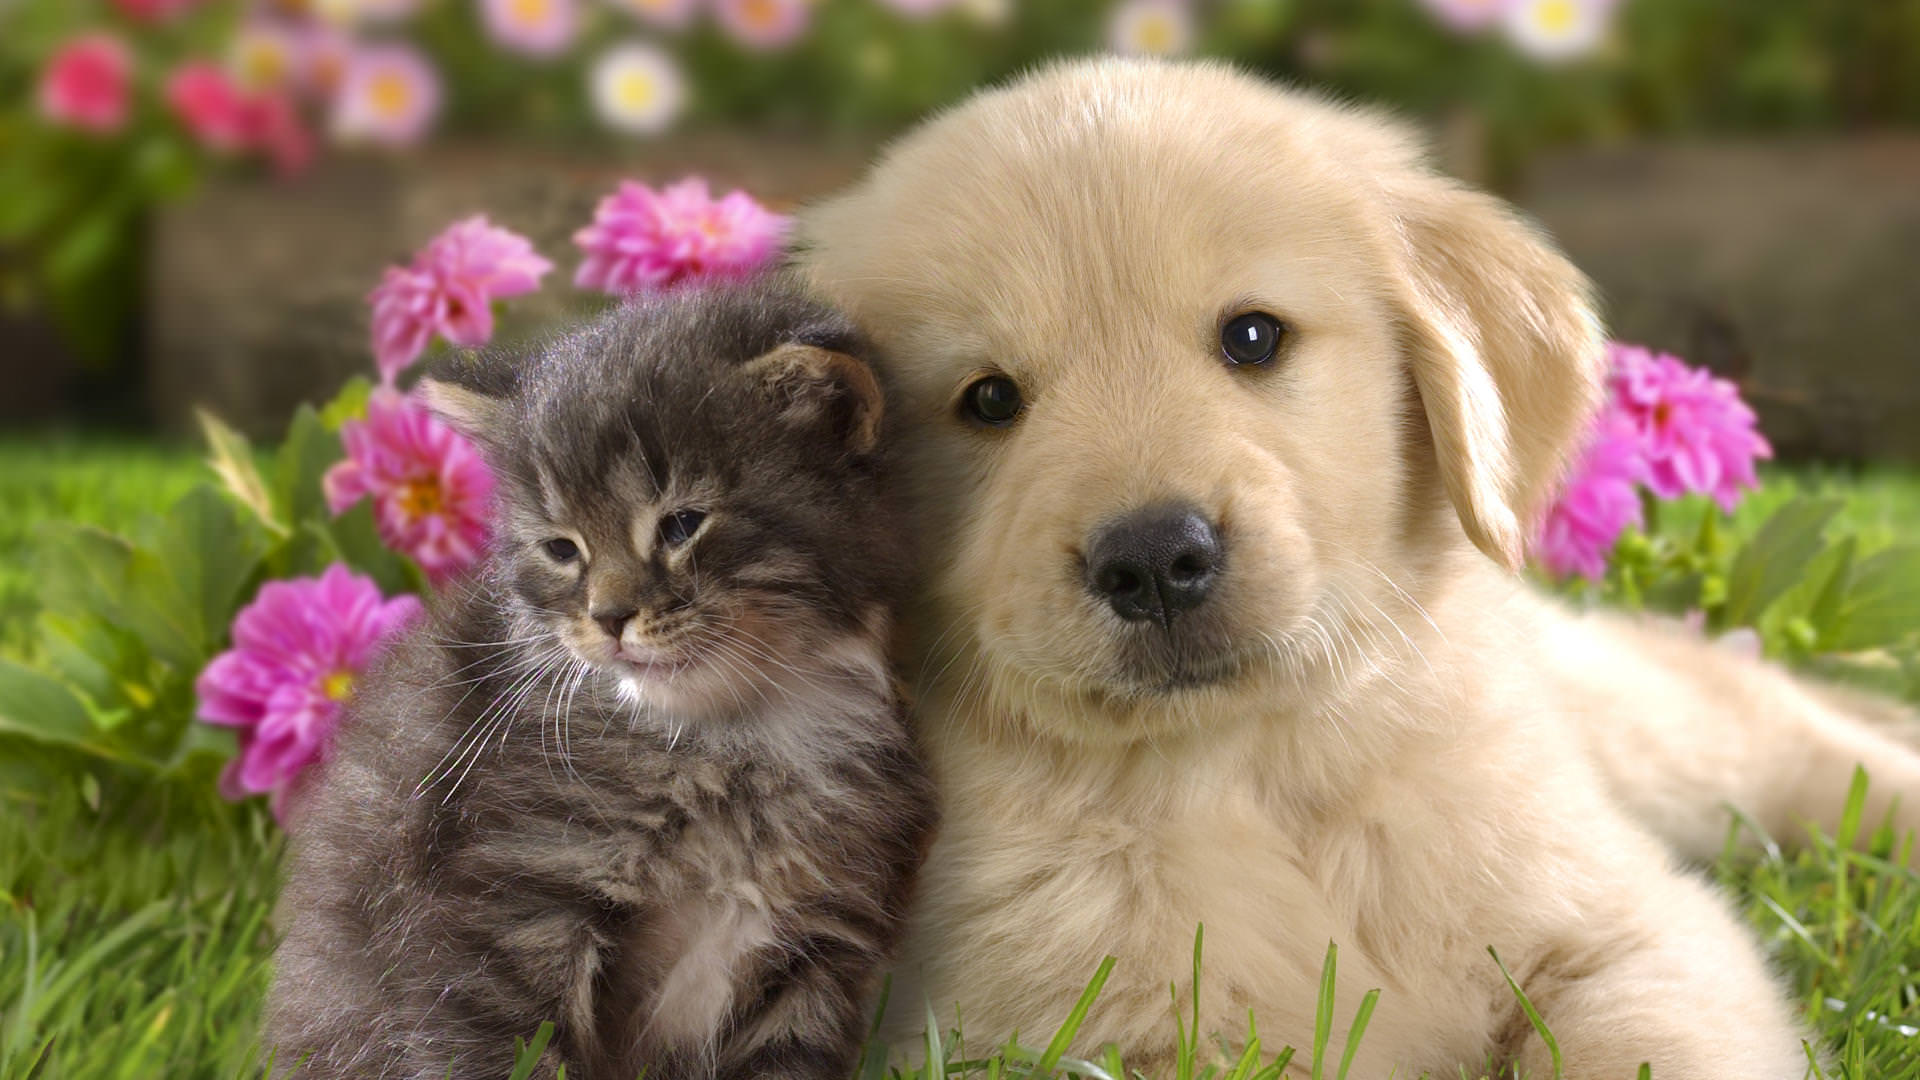 Gửi chó mèo: Bạn yêu thú cưng của mình và muốn chăm sóc cho chúng khi bạn không ở bên cạnh. Hình ảnh này sẽ giúp bạn tìm ra cách tốt nhất để gửi các bạn cún, mèo đến với những người yêu thú cưng.